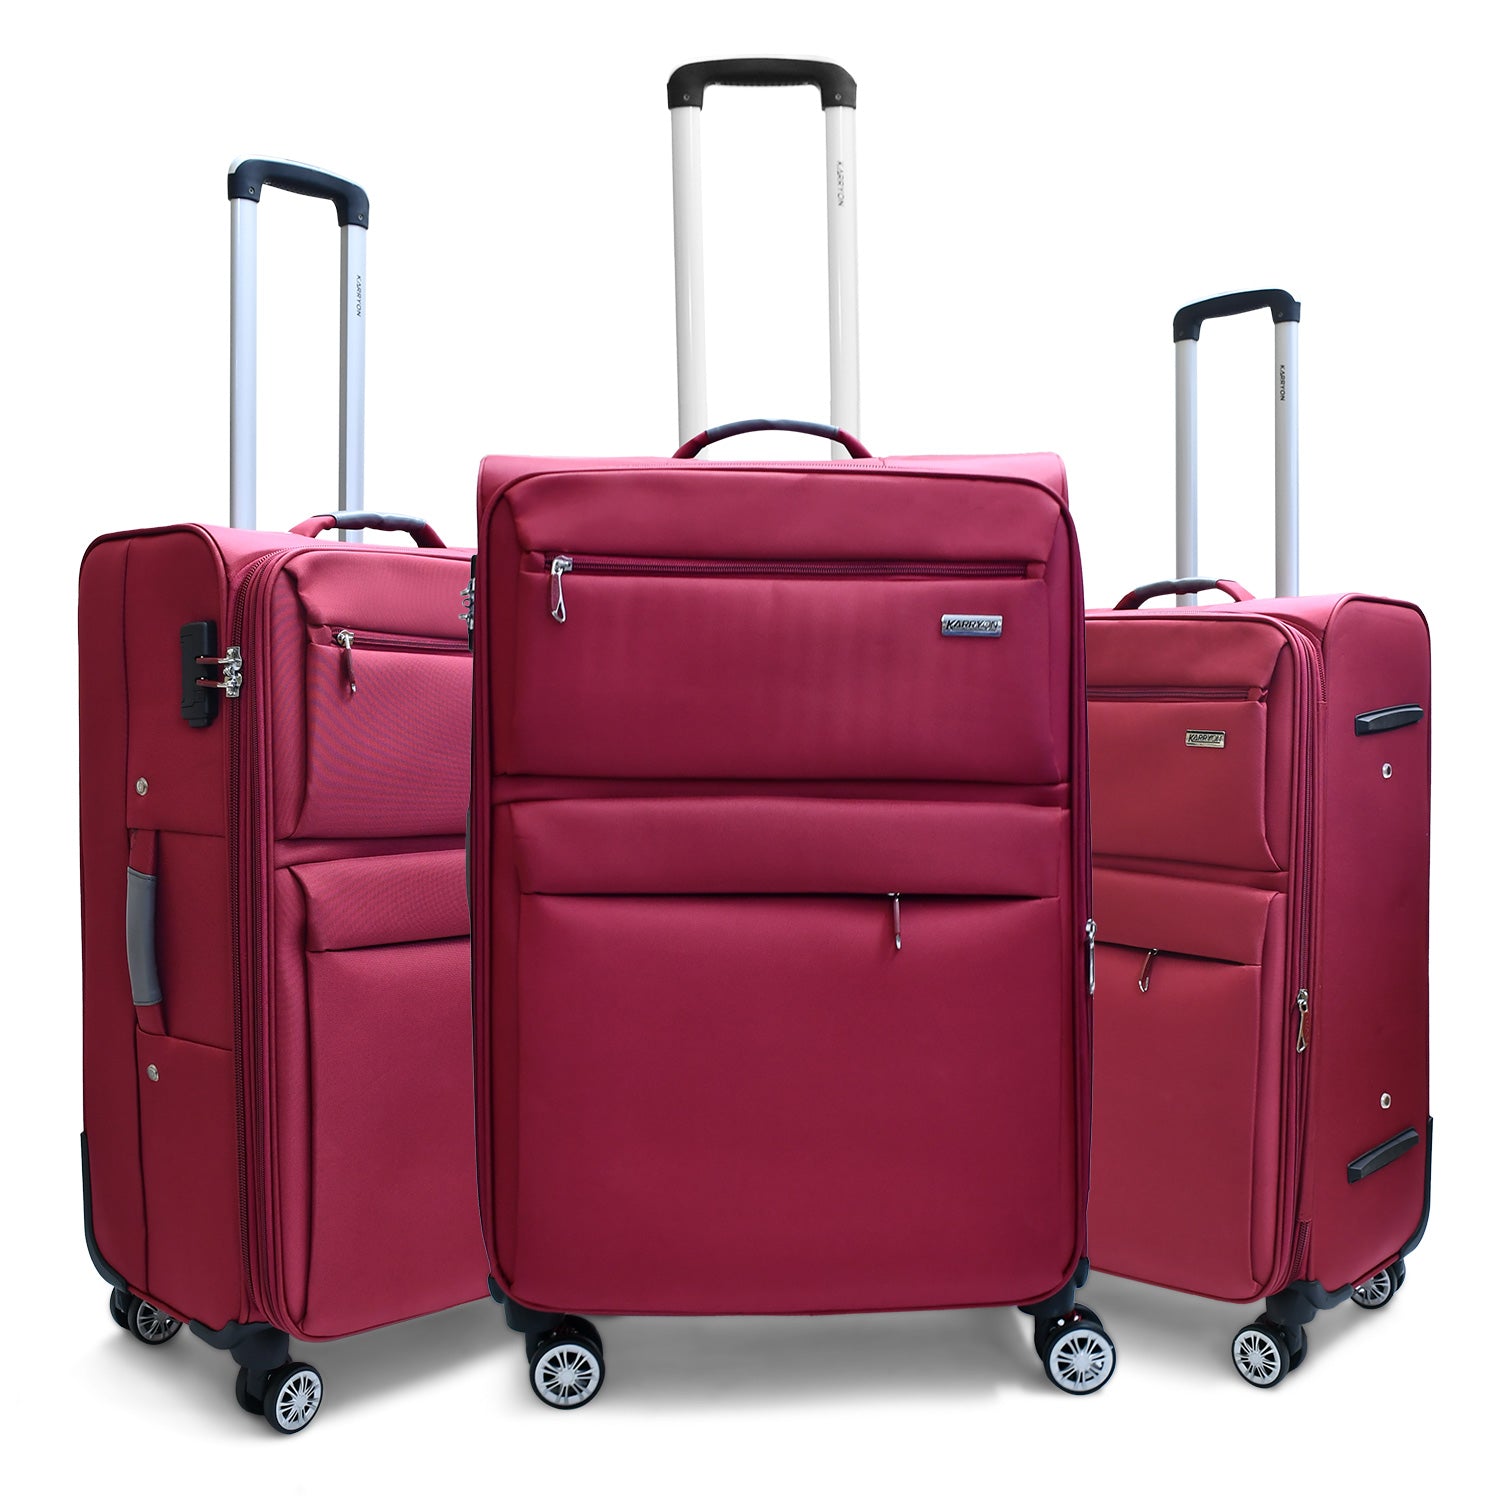 Karry-On Gallant Double Wheeled Soft Luggage 3Pc Set (20/26/30